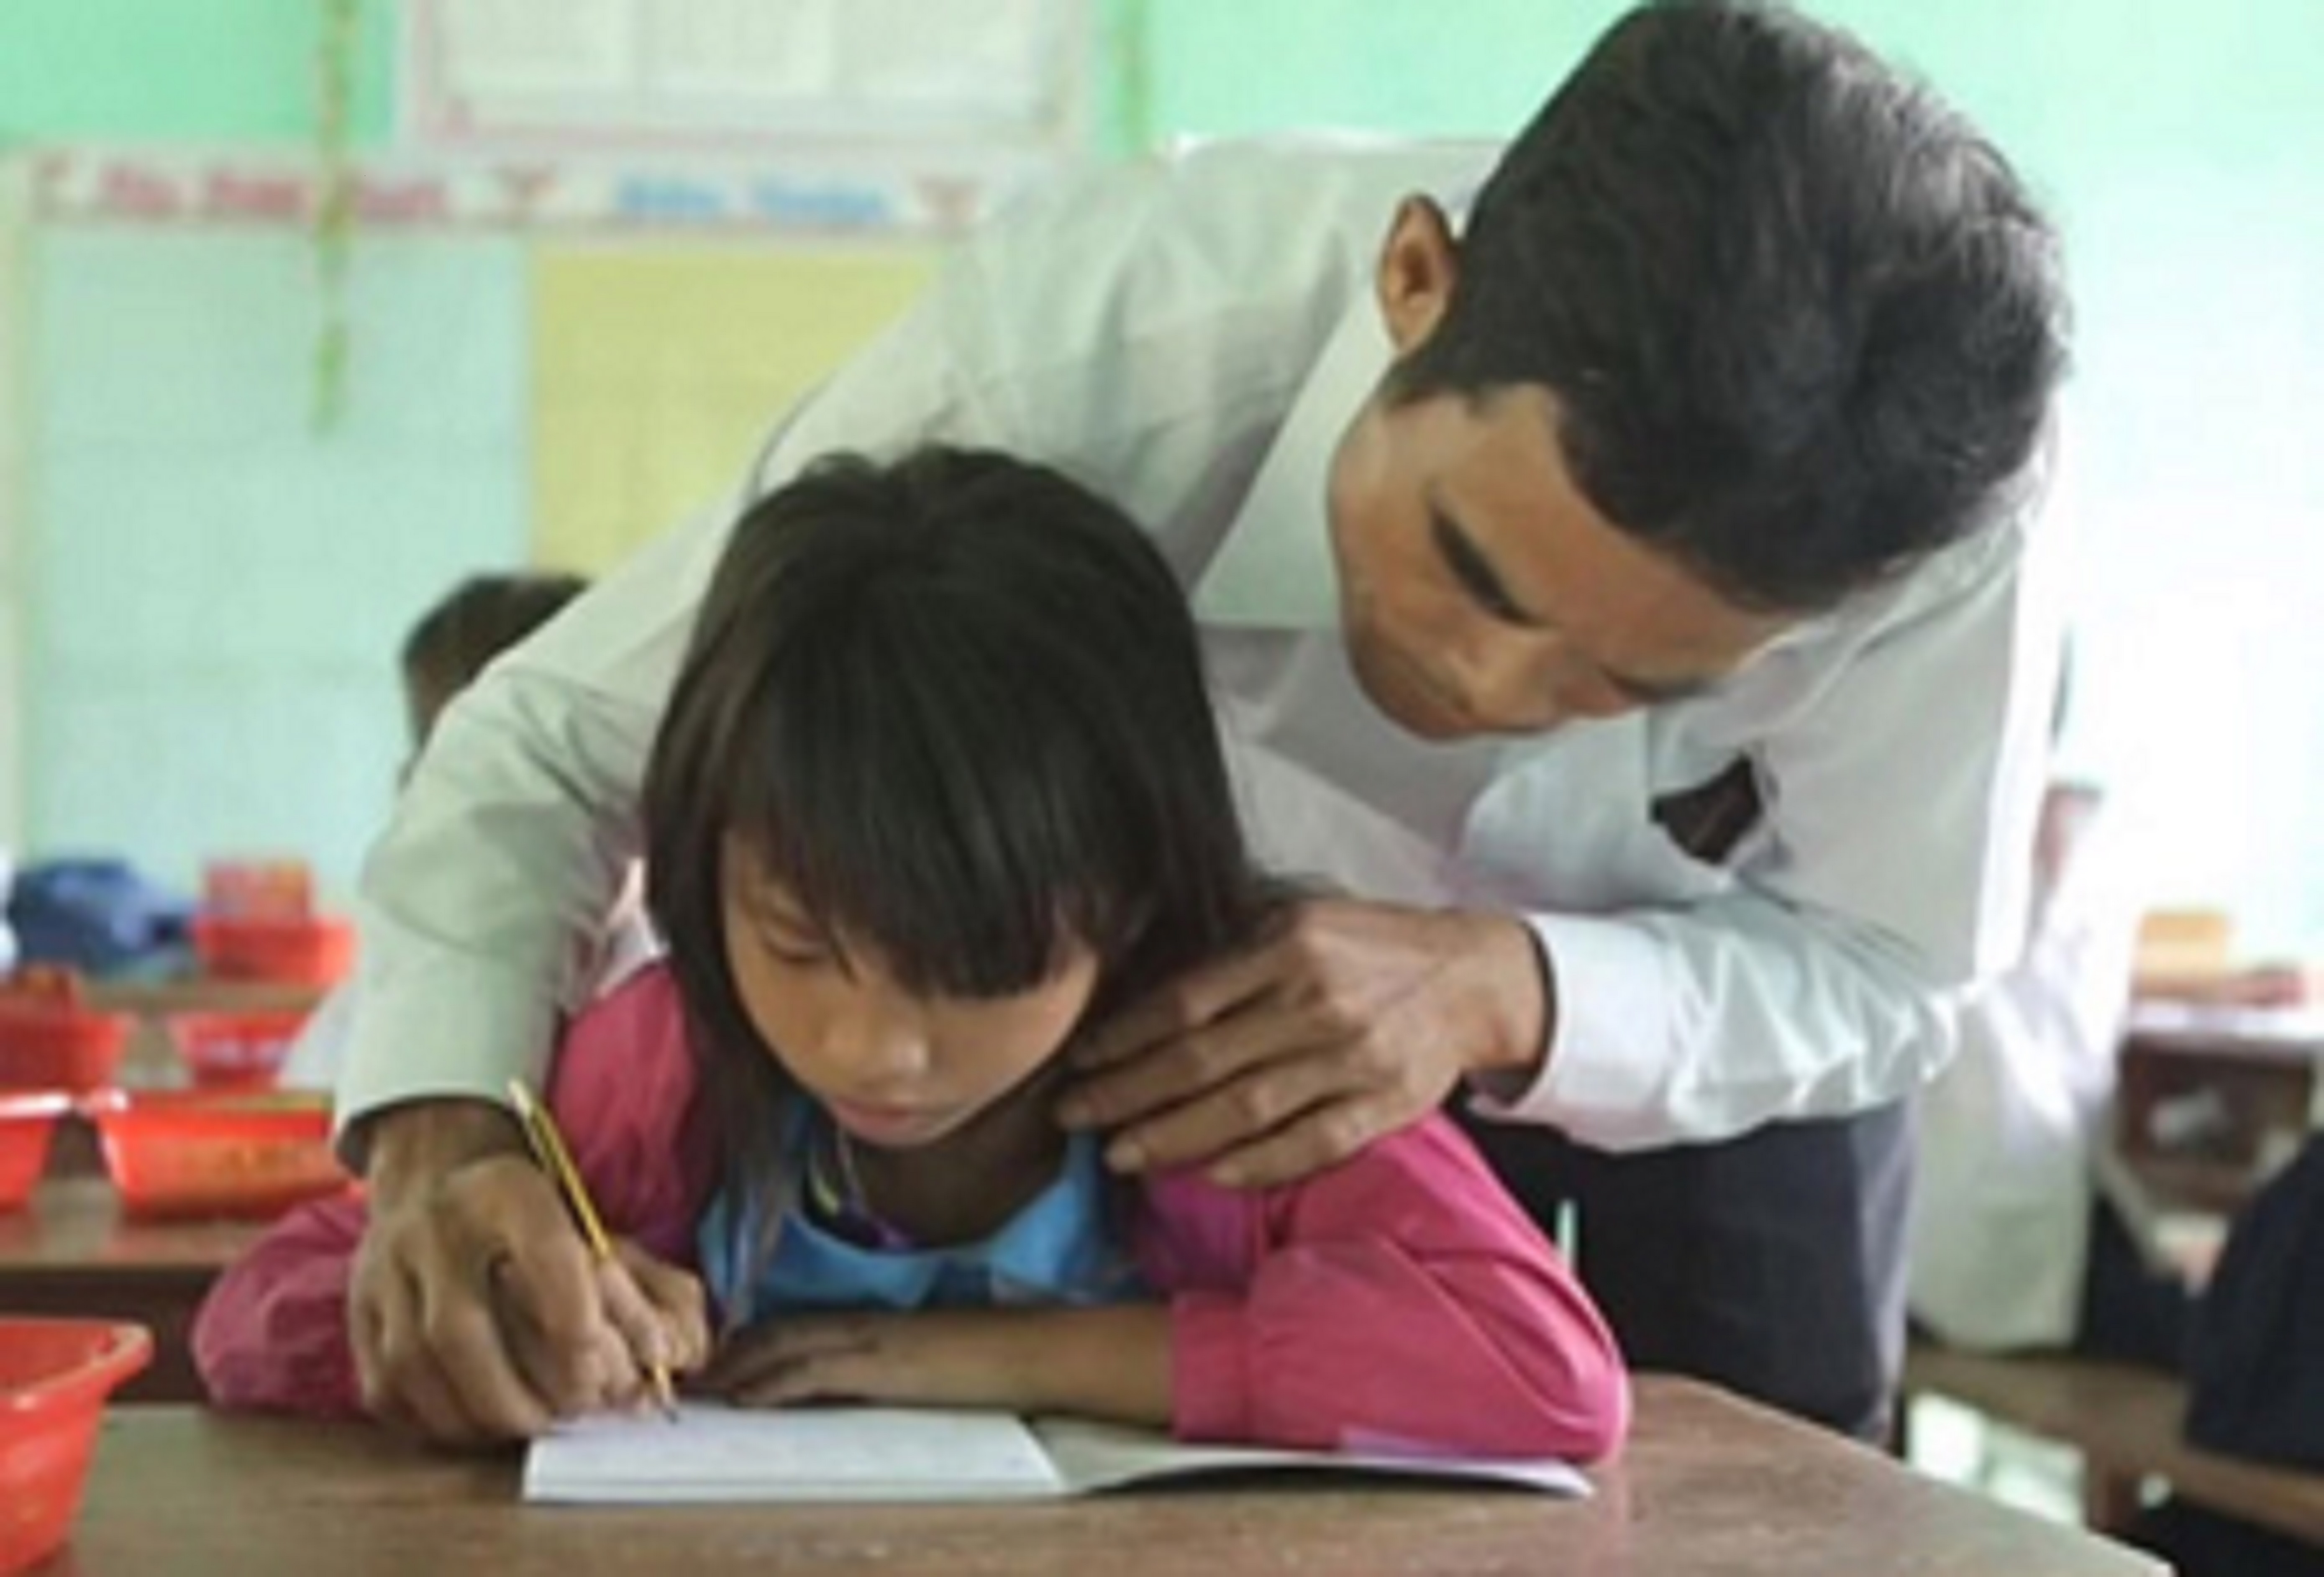 Hàng trăm giáo viên nhận đỡ đầu, tiếp sức học sinh nghèo đến trường tại Quảng Ngãi - Hình 1